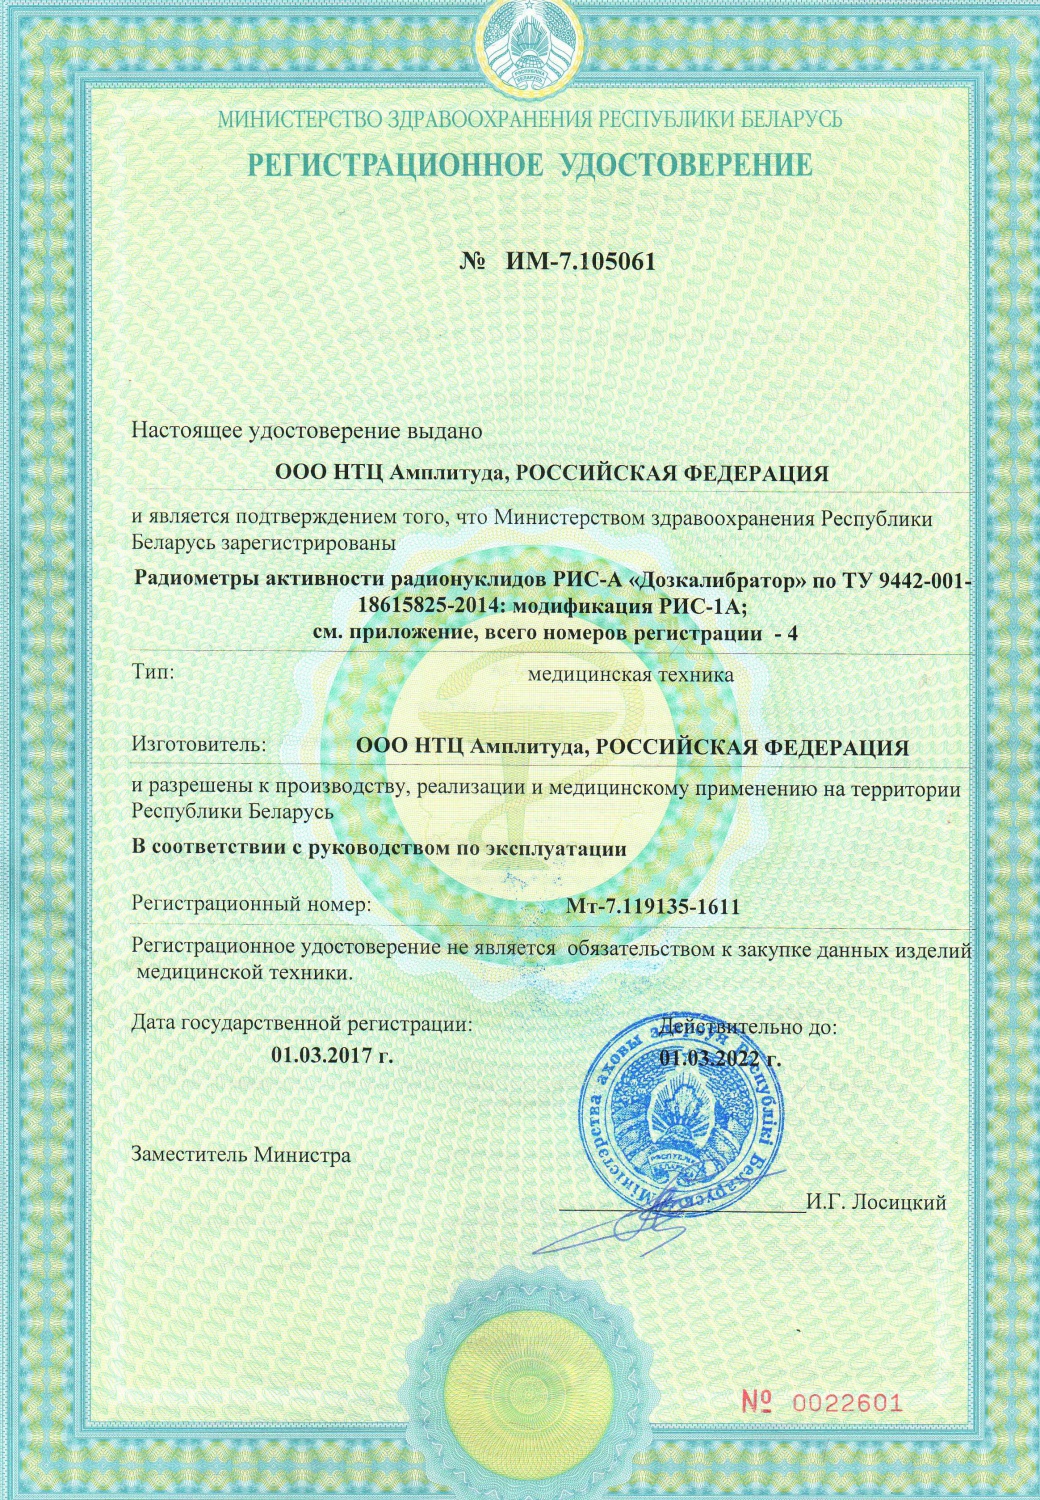 Радиометры активности радионуклидов РИС-А «Дозкалибратор» внесены в реестр медицинских изделий Республики Беларусь.